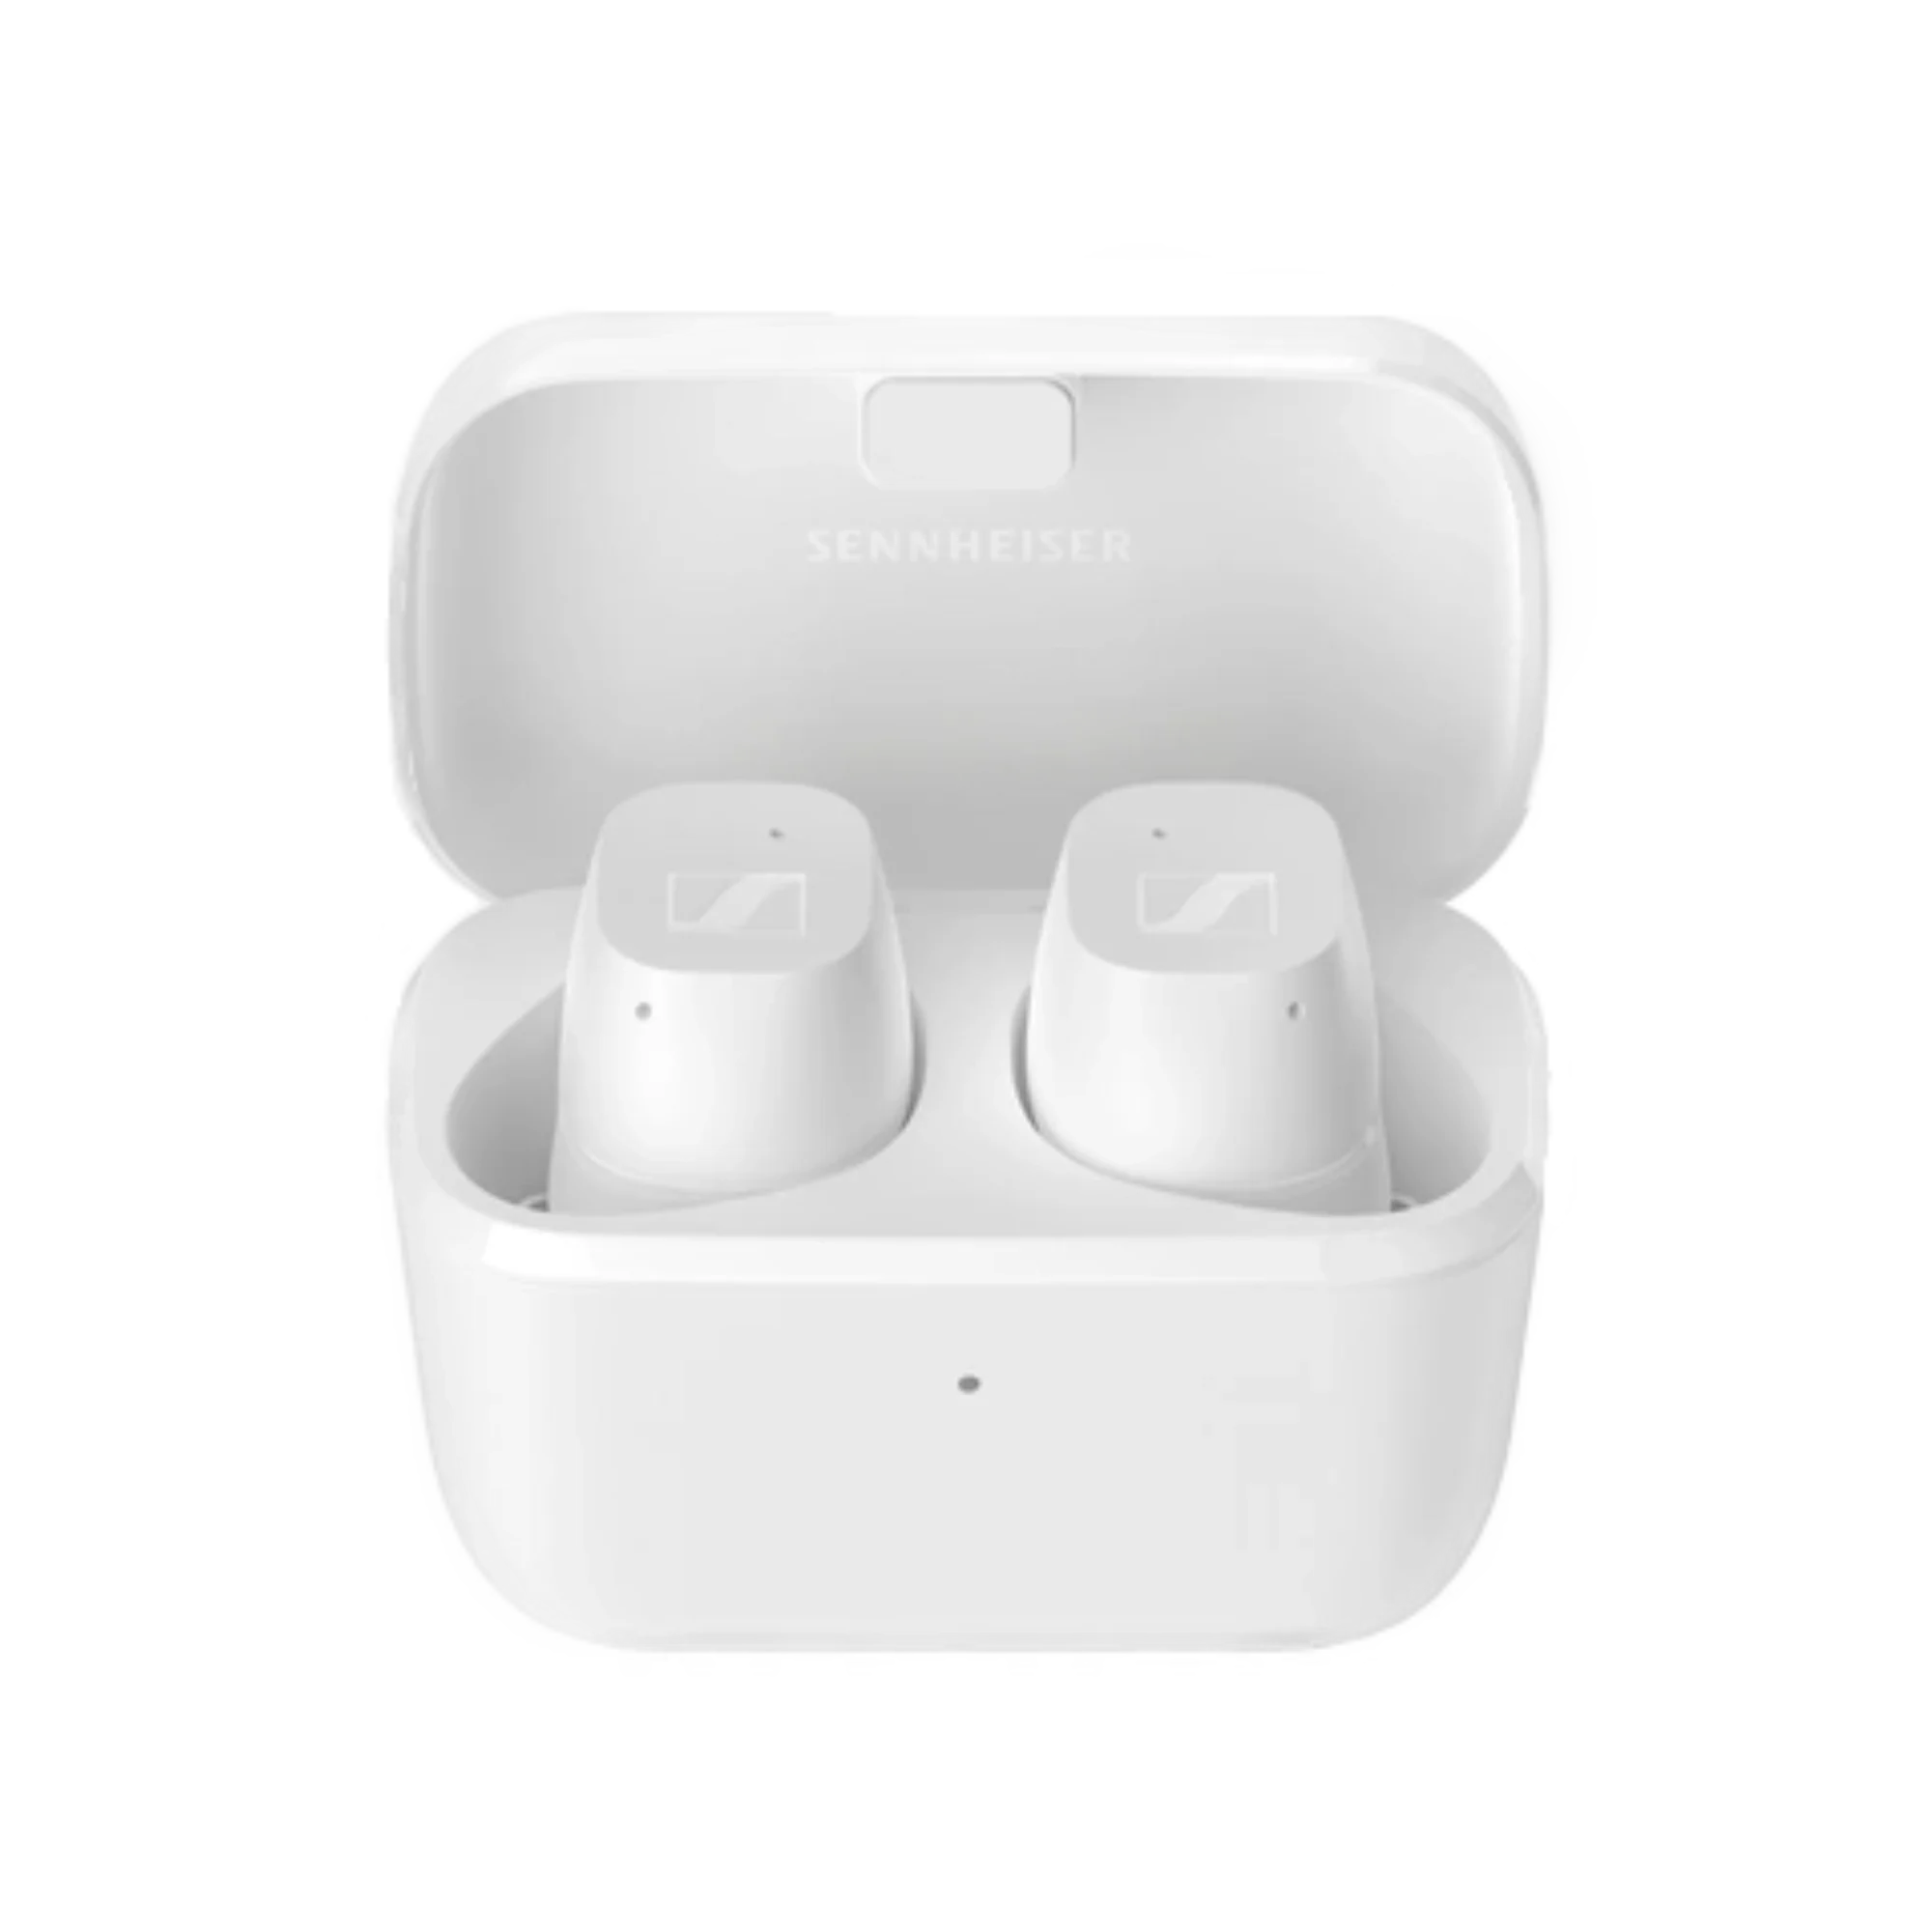 Foto: In-ear-kopfhoerer Sennheiser CX True Wireless